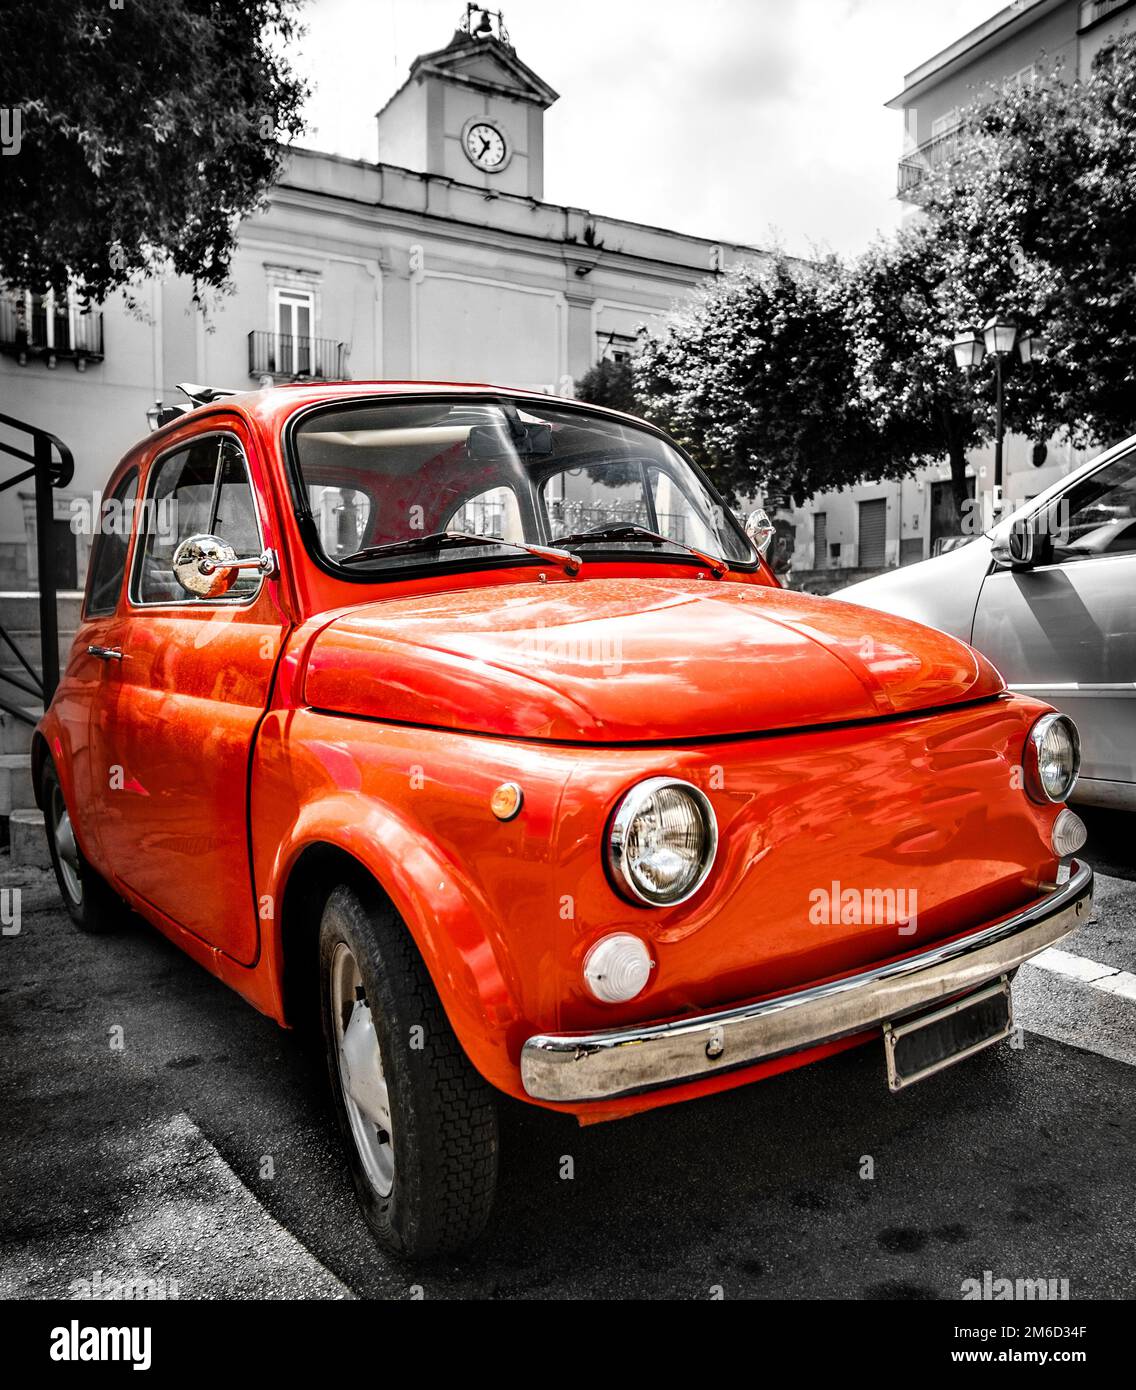 Vintage rouge italien voiture ancienne couleur sélective noir et blanc italie ville Banque D'Images